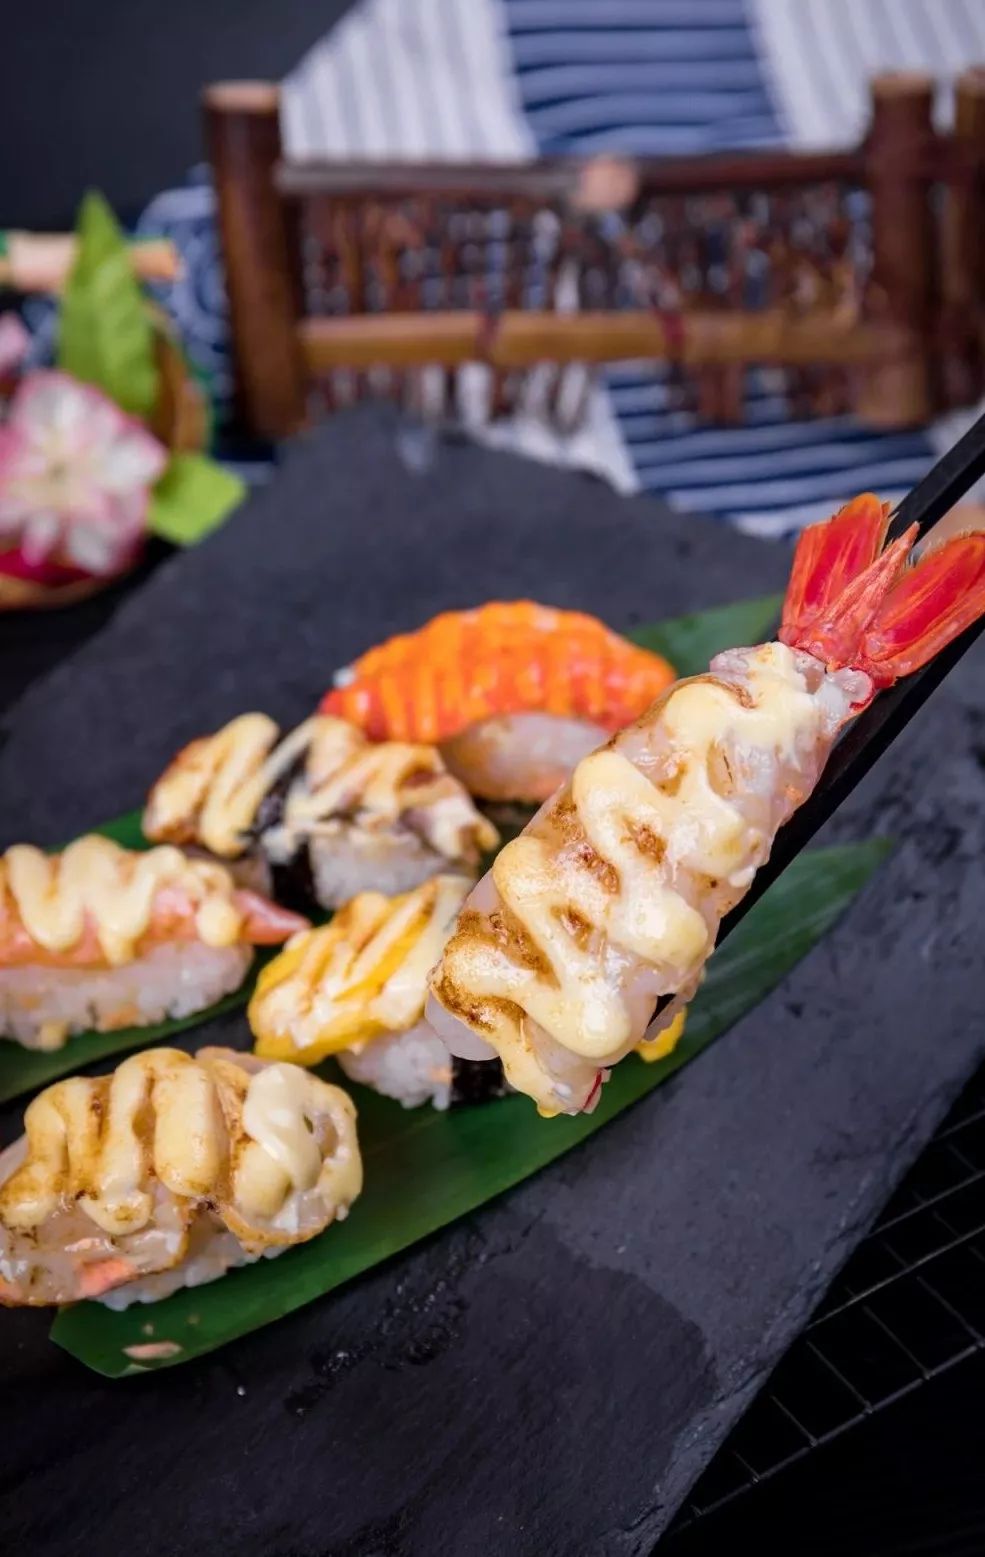 每份寿司都经过火枪高温火炙,鲜虾,鳗鱼等各种口味一应俱全,最爱秘制